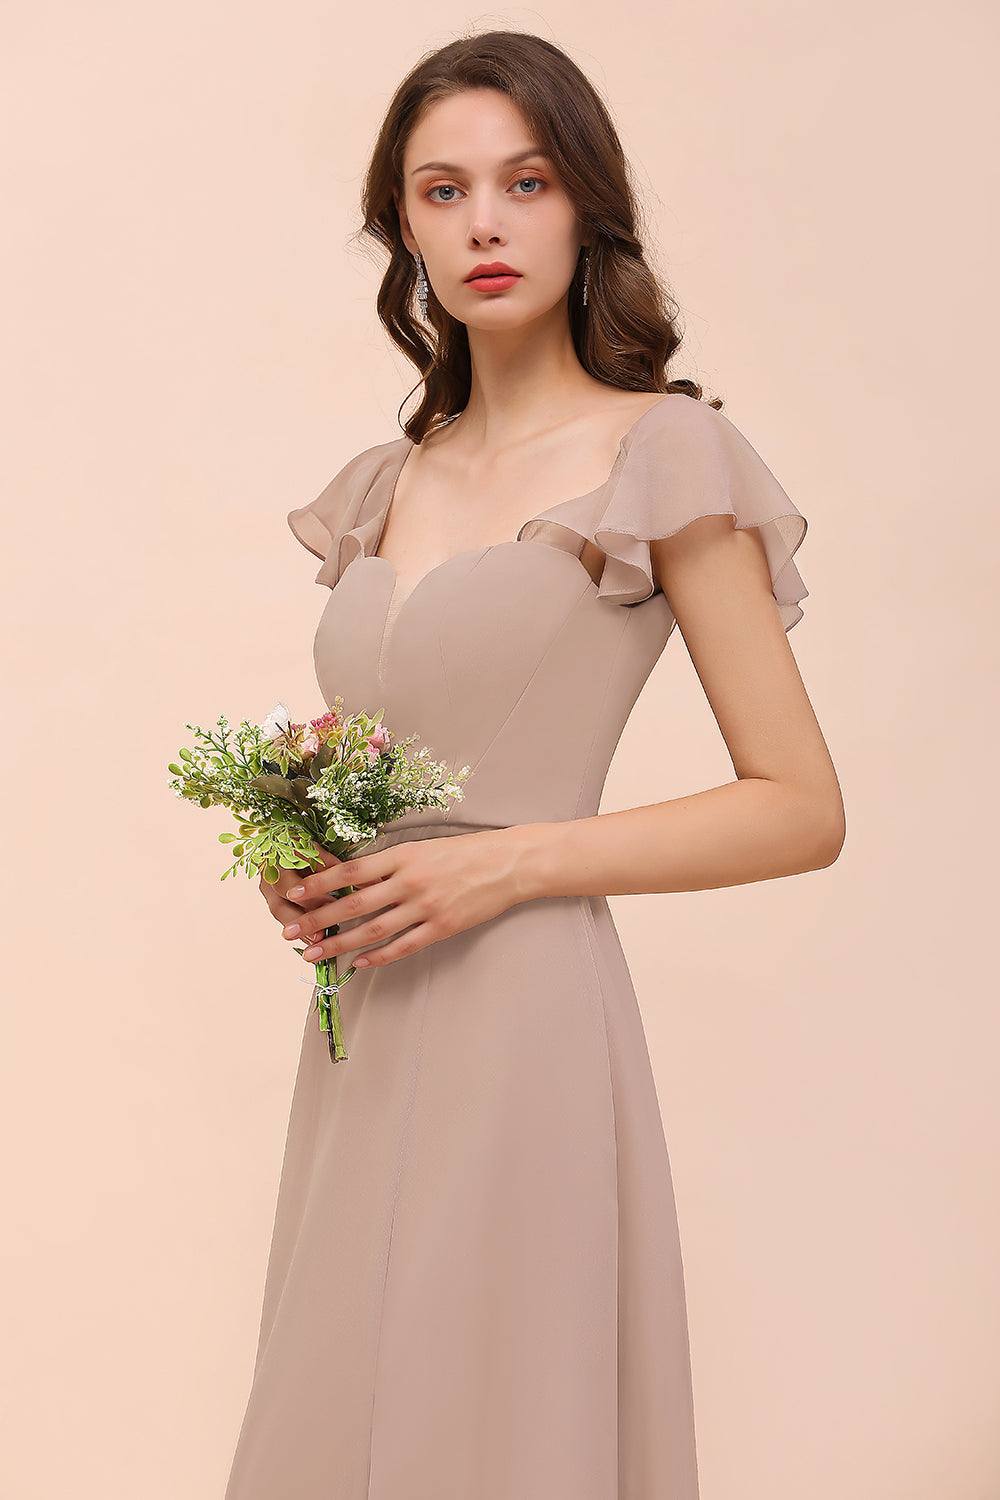 Bestellen Sie Champagne Brautjungfernkleider Lang online bei babyonlinedress.de. Günstiges Kleid Für Brautjungfern maß geschneidert bekommen.